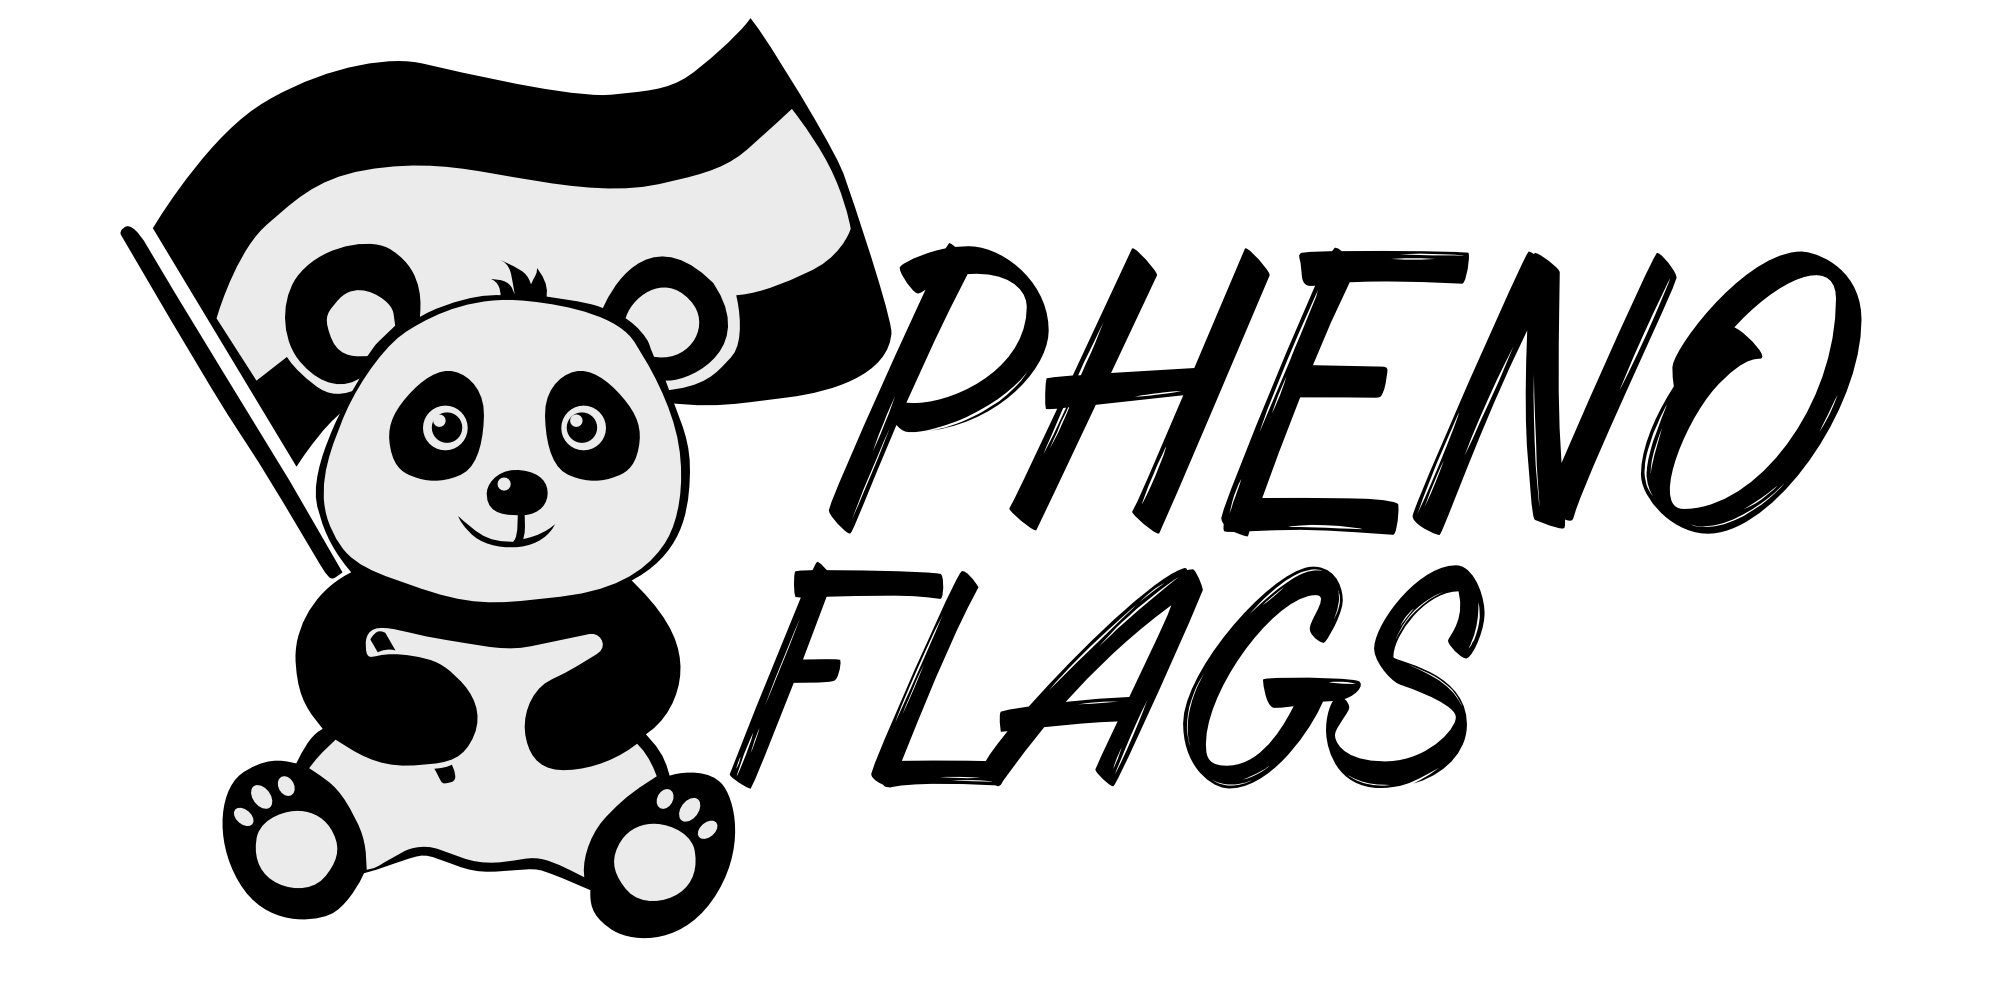 PHENO FLAGS